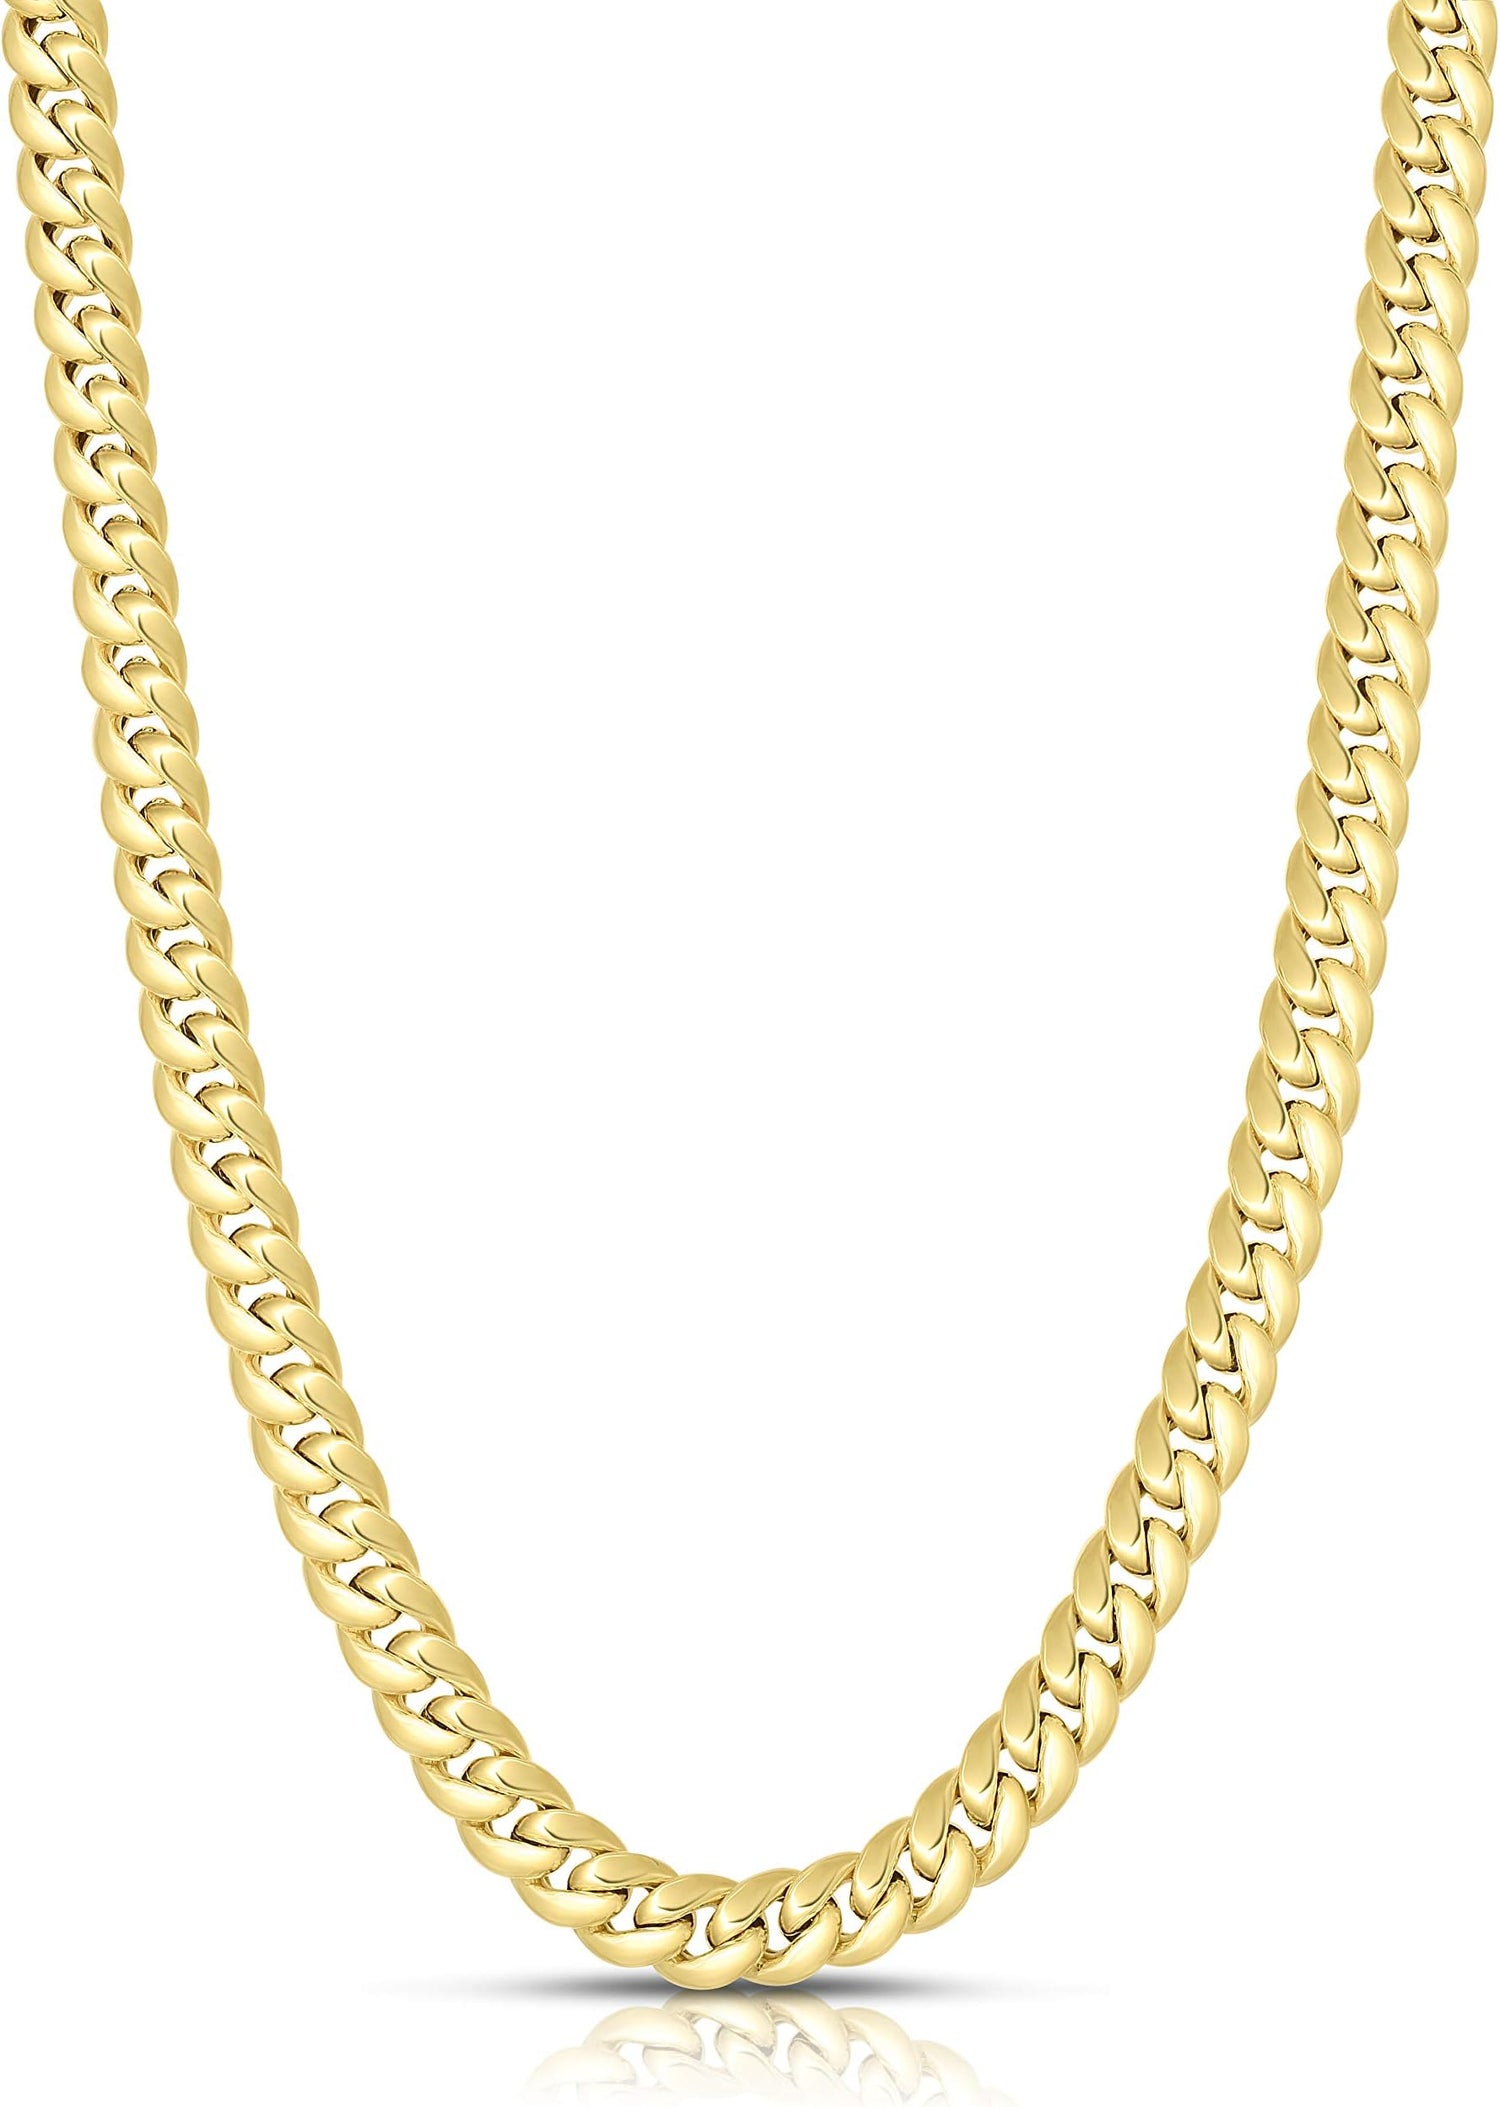 14k Yellow Gold 6.6mm Semi-Lite Miami Cuban Chain Necklace